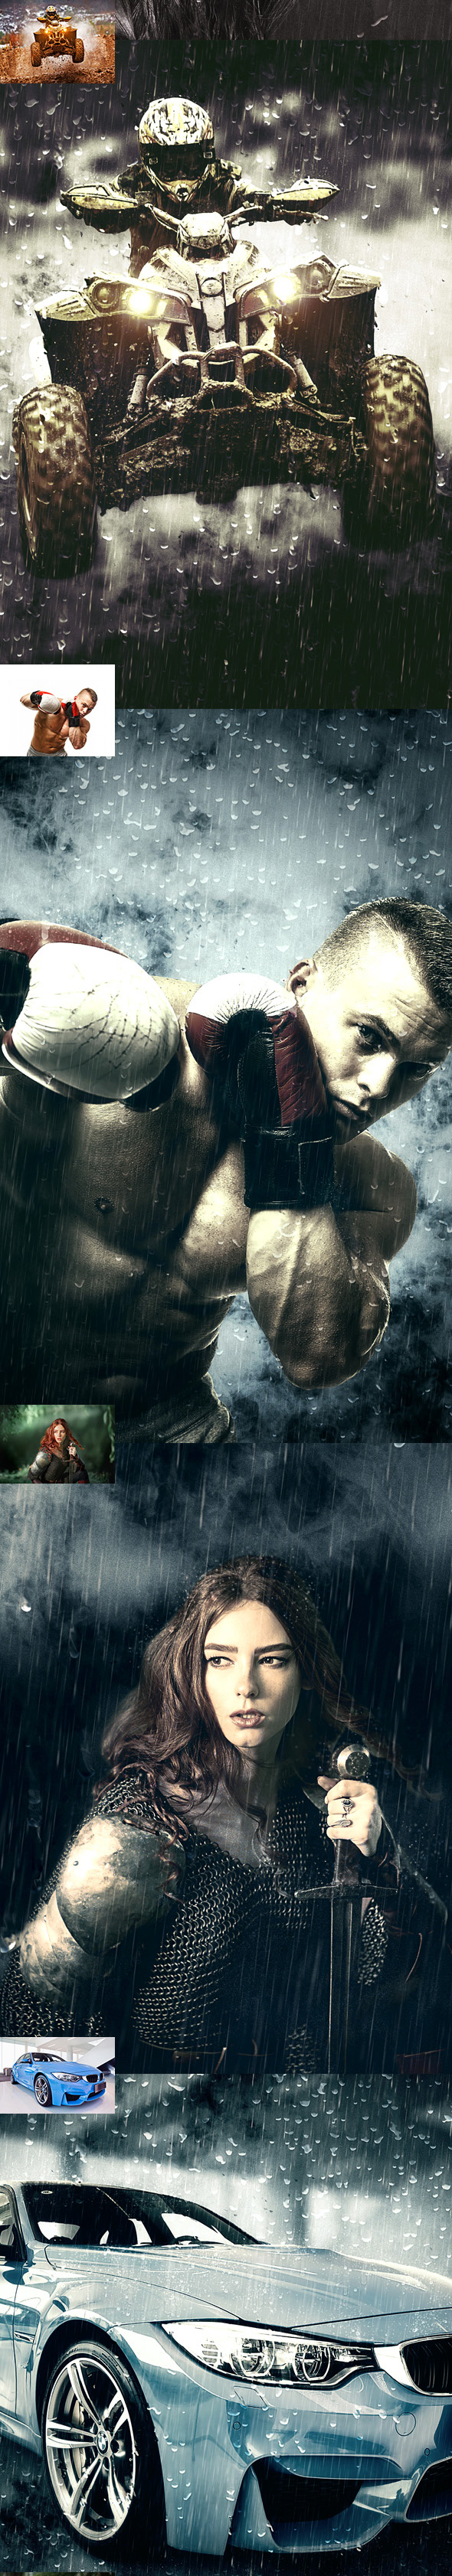 一款打造暴雨特效的PS动作下载 Rainstorm 2 CS4+ Photoshop Action [atn]插图(2)